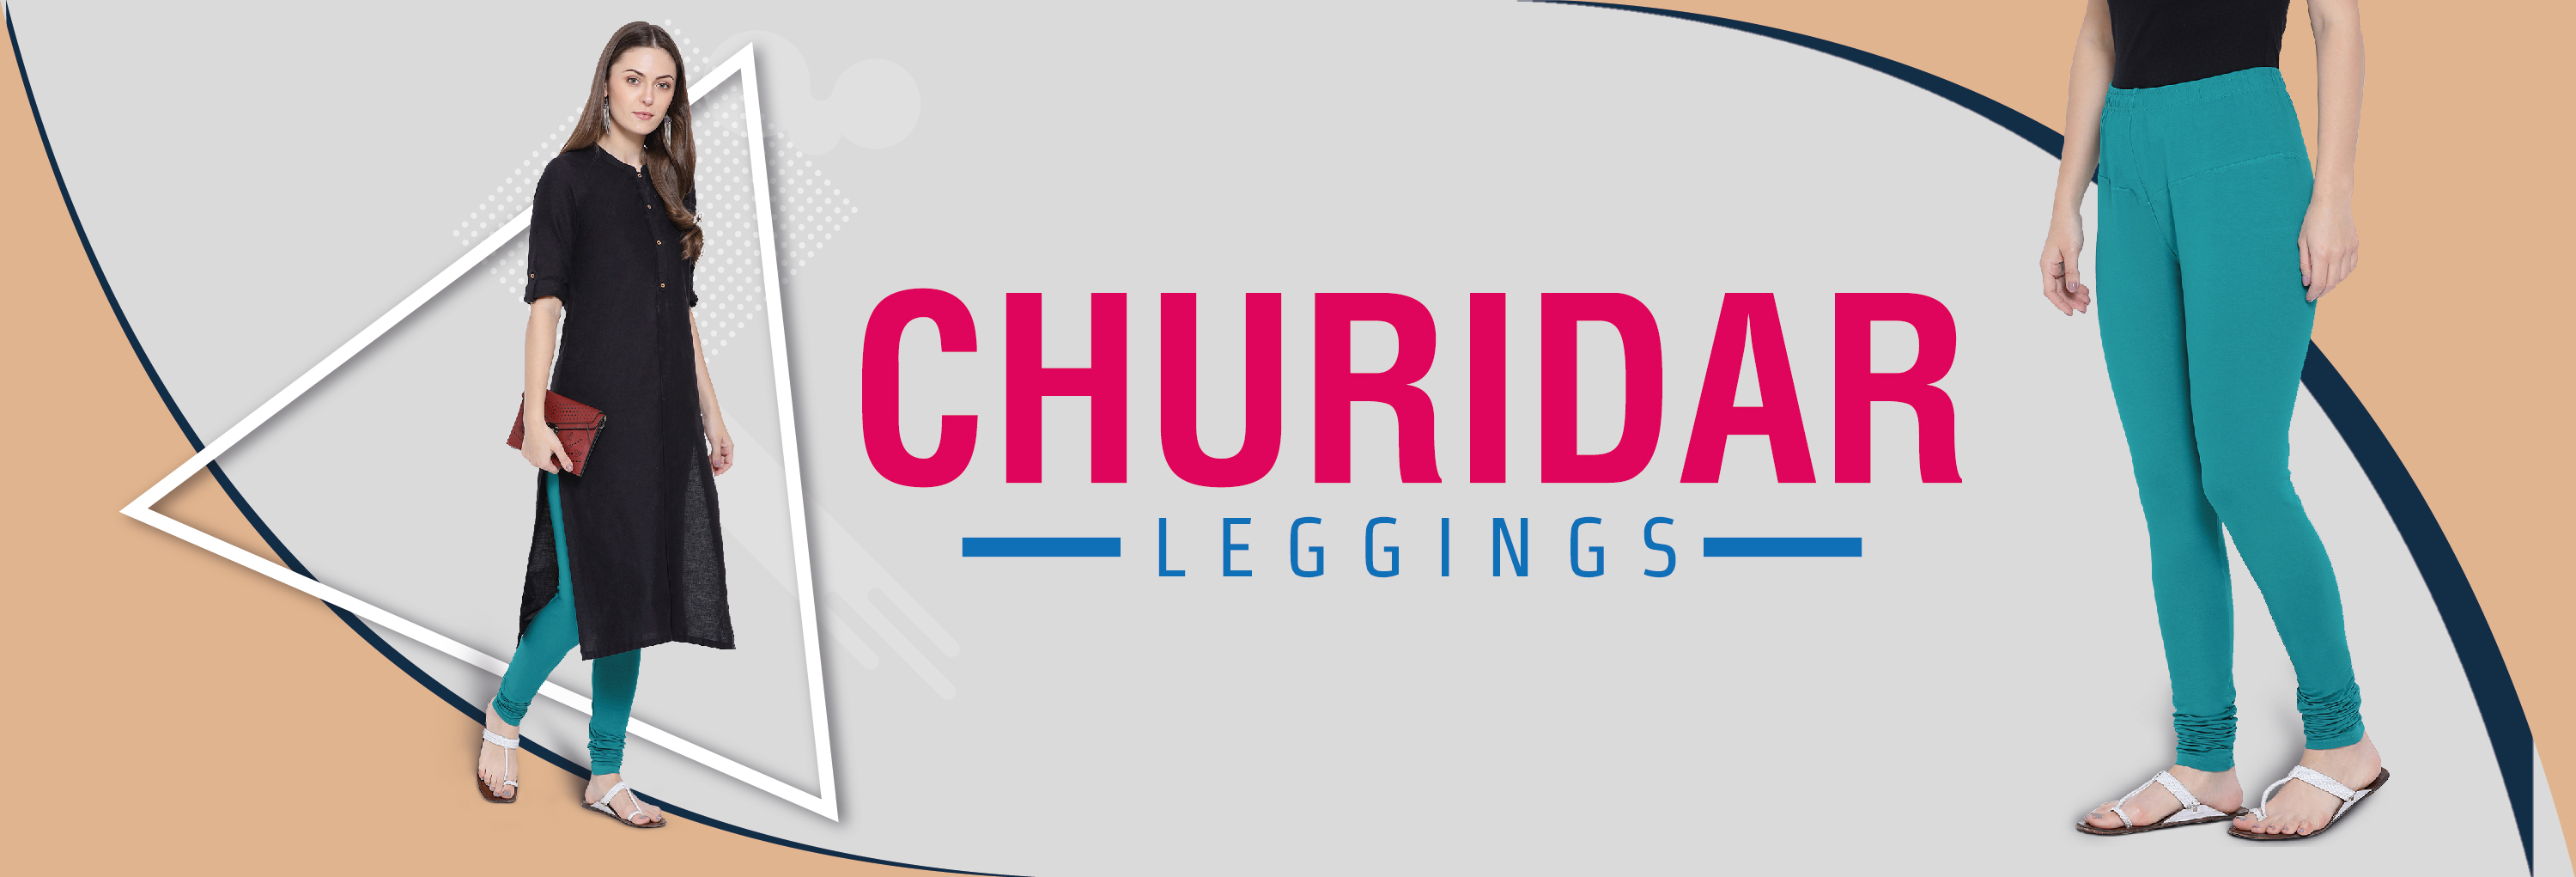 Ladies Chudidar Leggings, Stylish & Comfortable